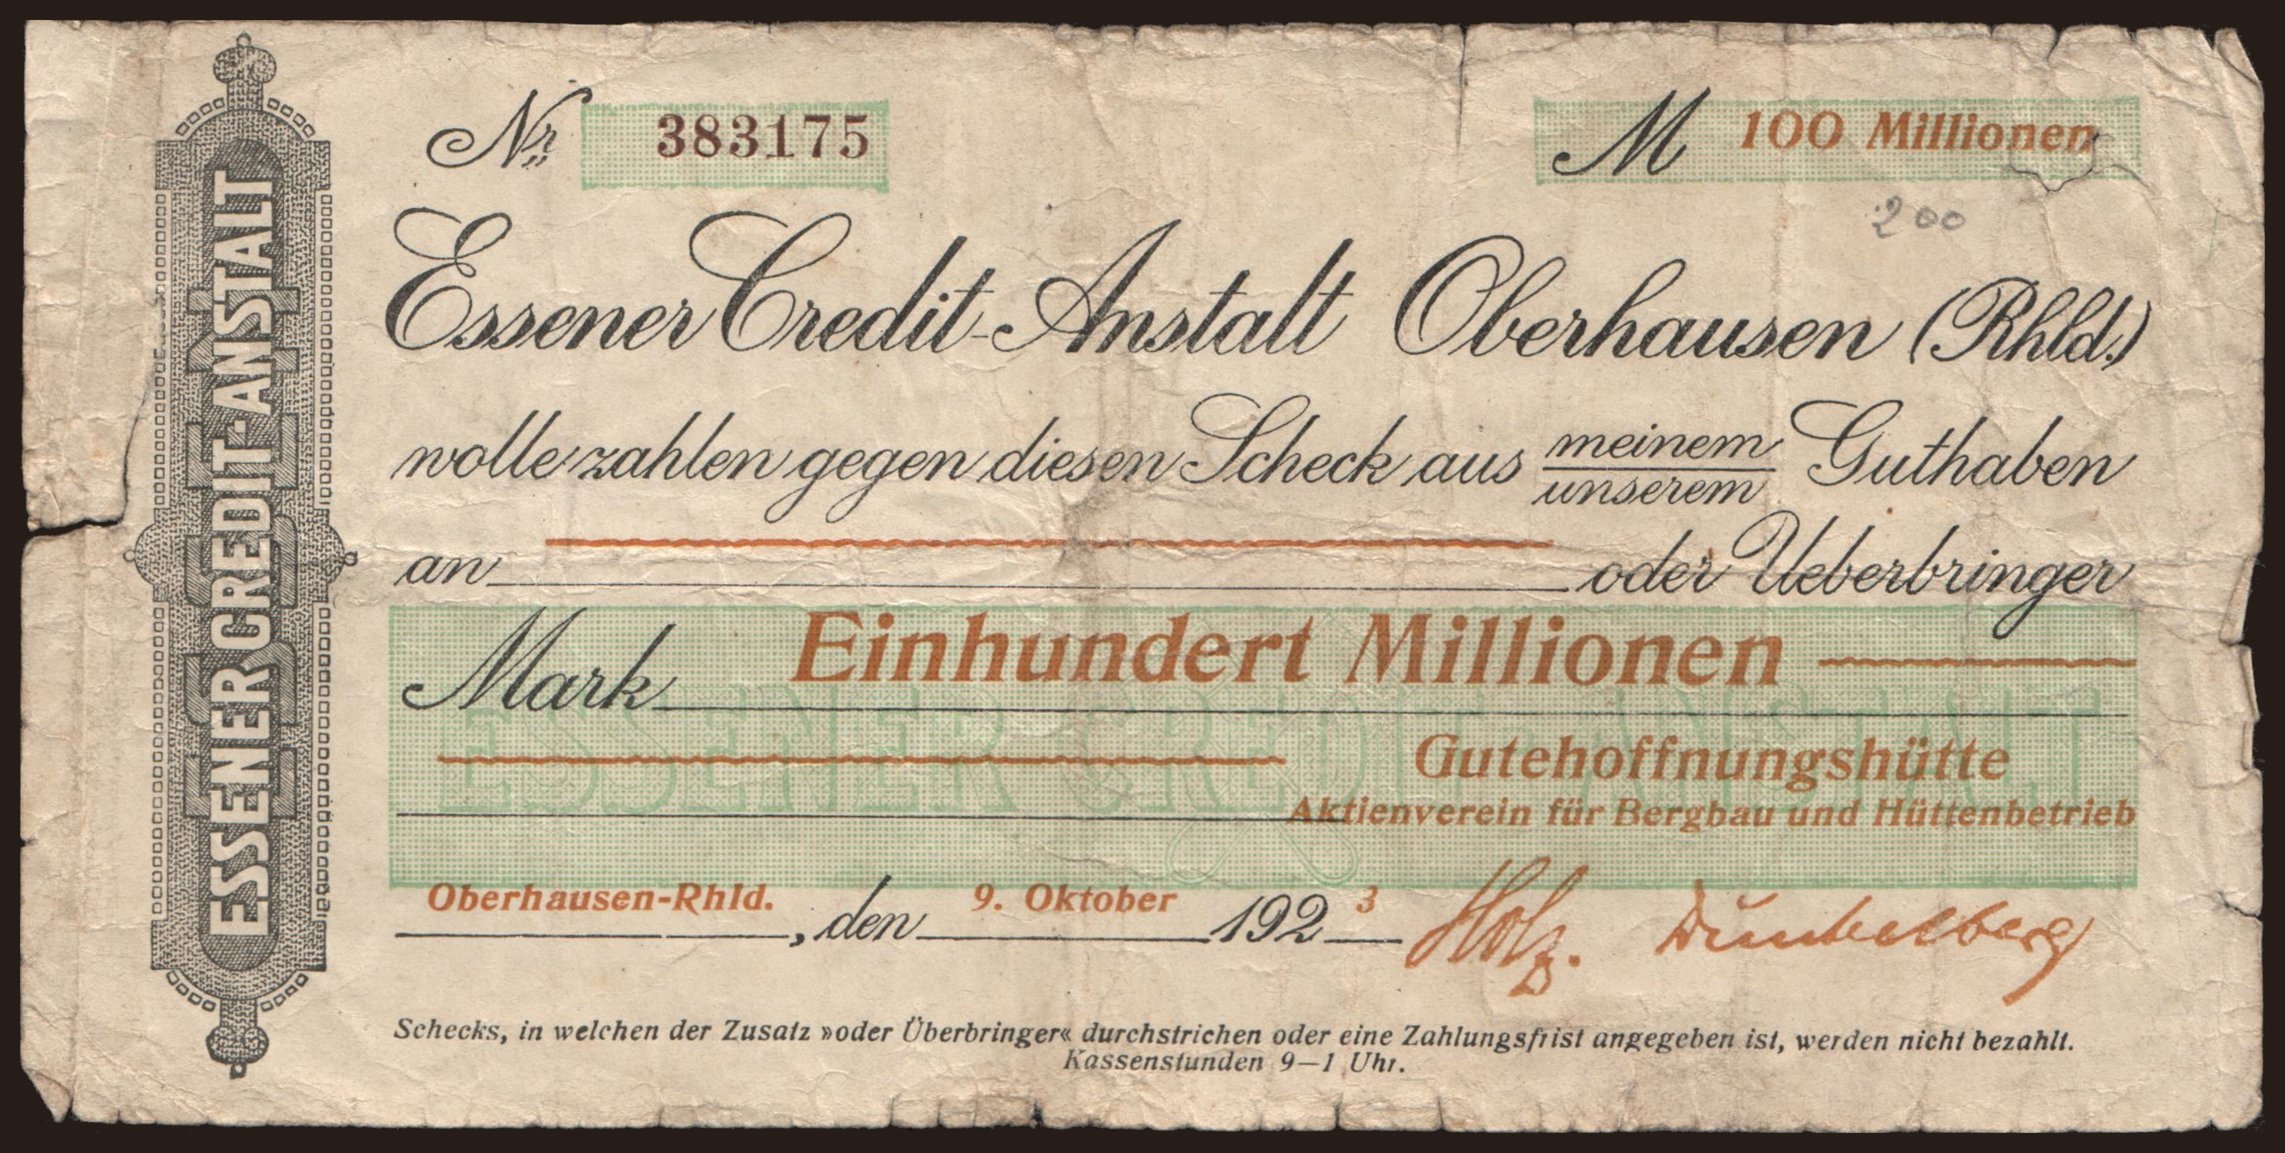 Oberhausen/ Gutehoffnungshütte Aktienverein für Bergbau und Hüttenbetrieb, 100.000.000 Mark, 1923